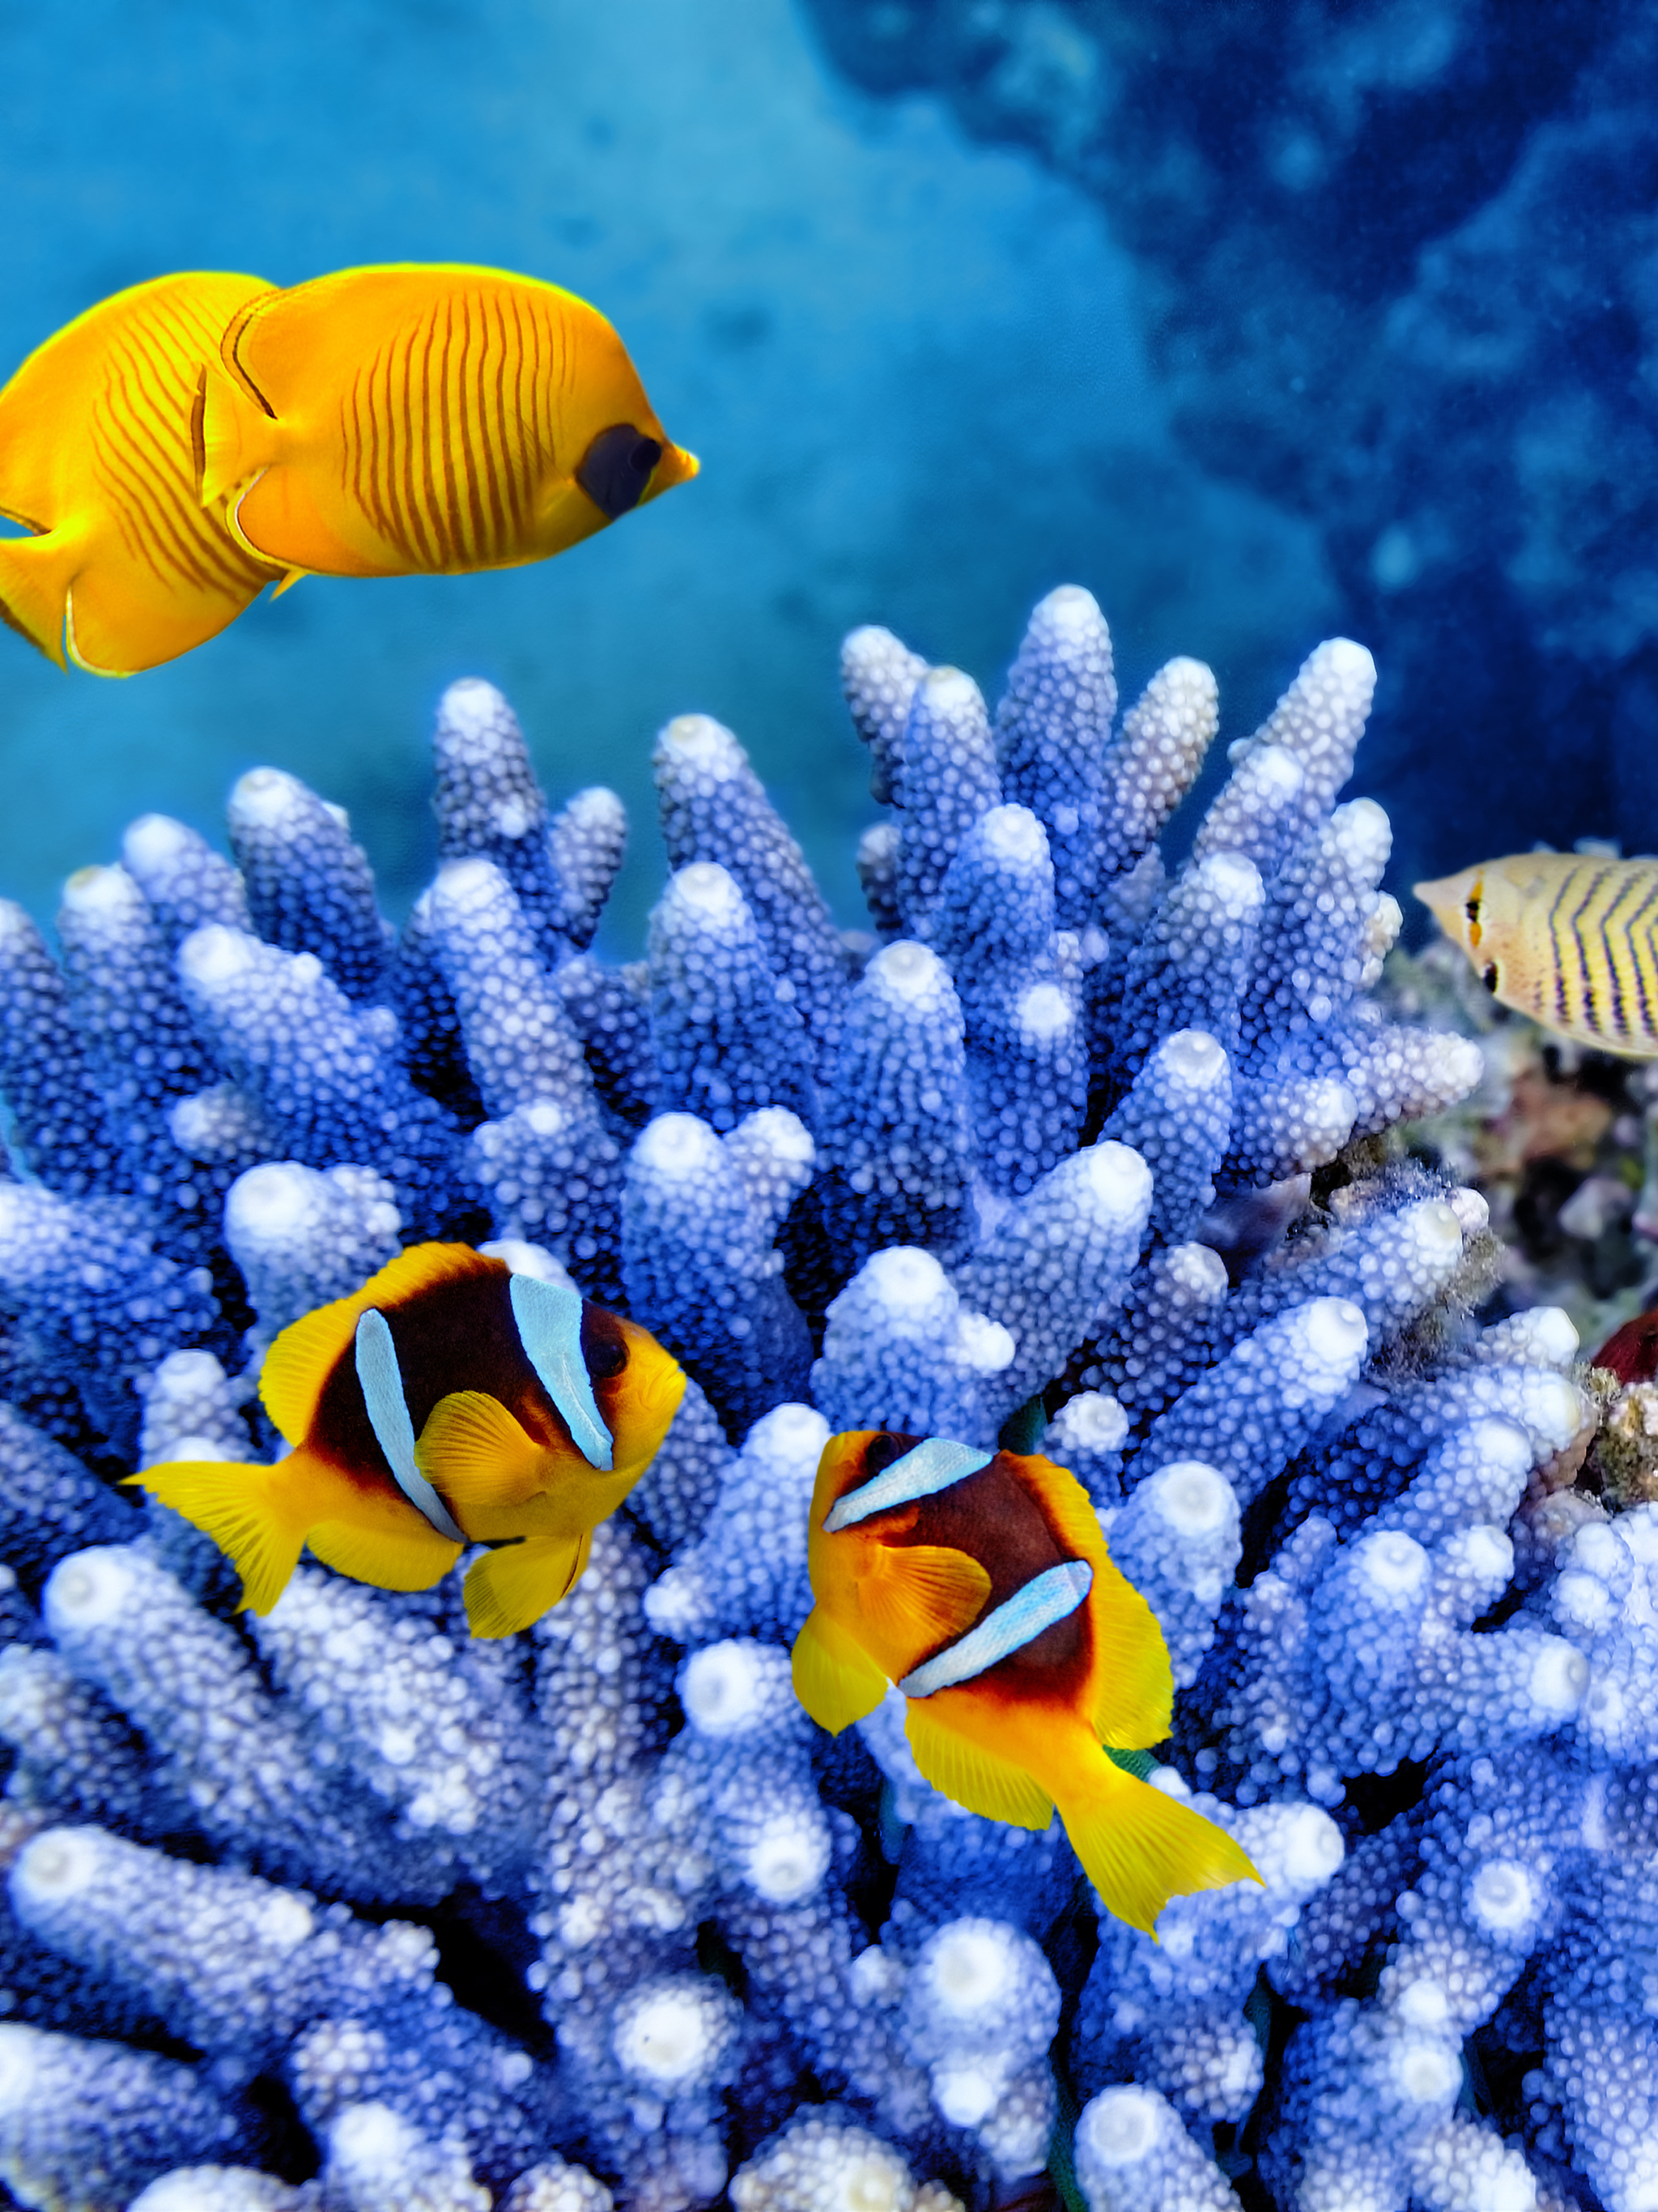 Скачать обои бесплатно Животные, Рыбы, Кораллы, Подводный, Коралловый, Морская Жизнь картинка на рабочий стол ПК